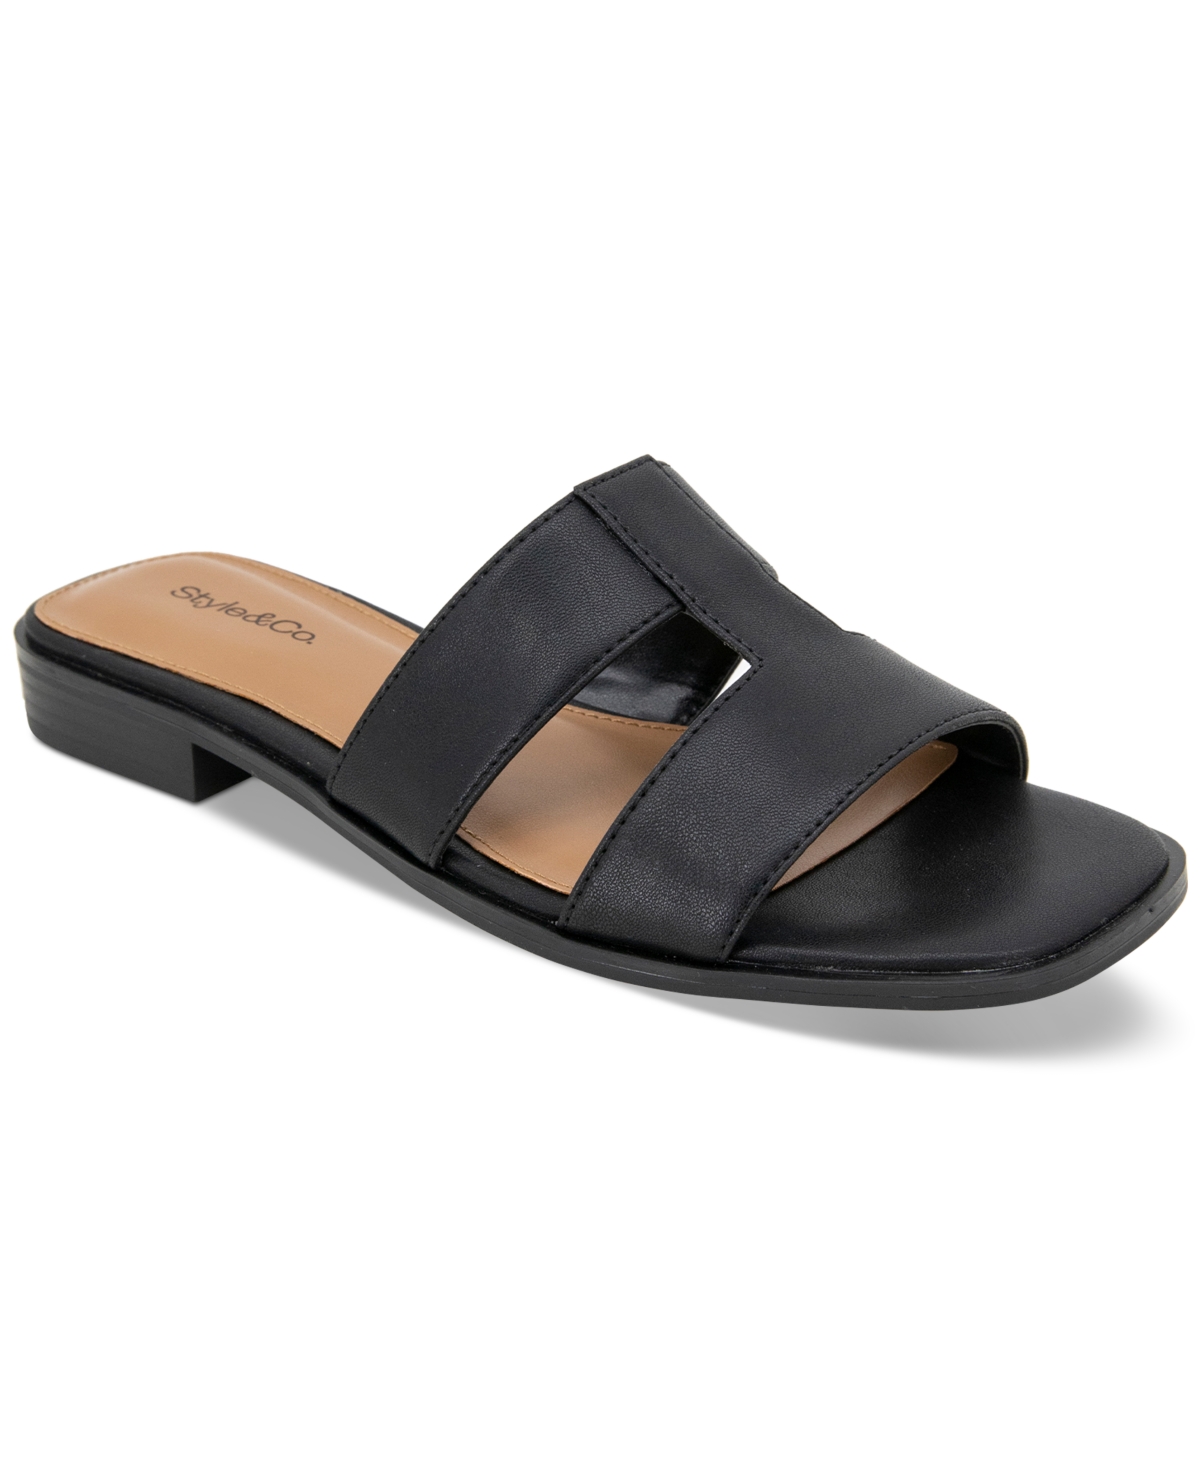 Gabbyy Slip-On Slide Flat Sandals, Created for Macy's - Tan